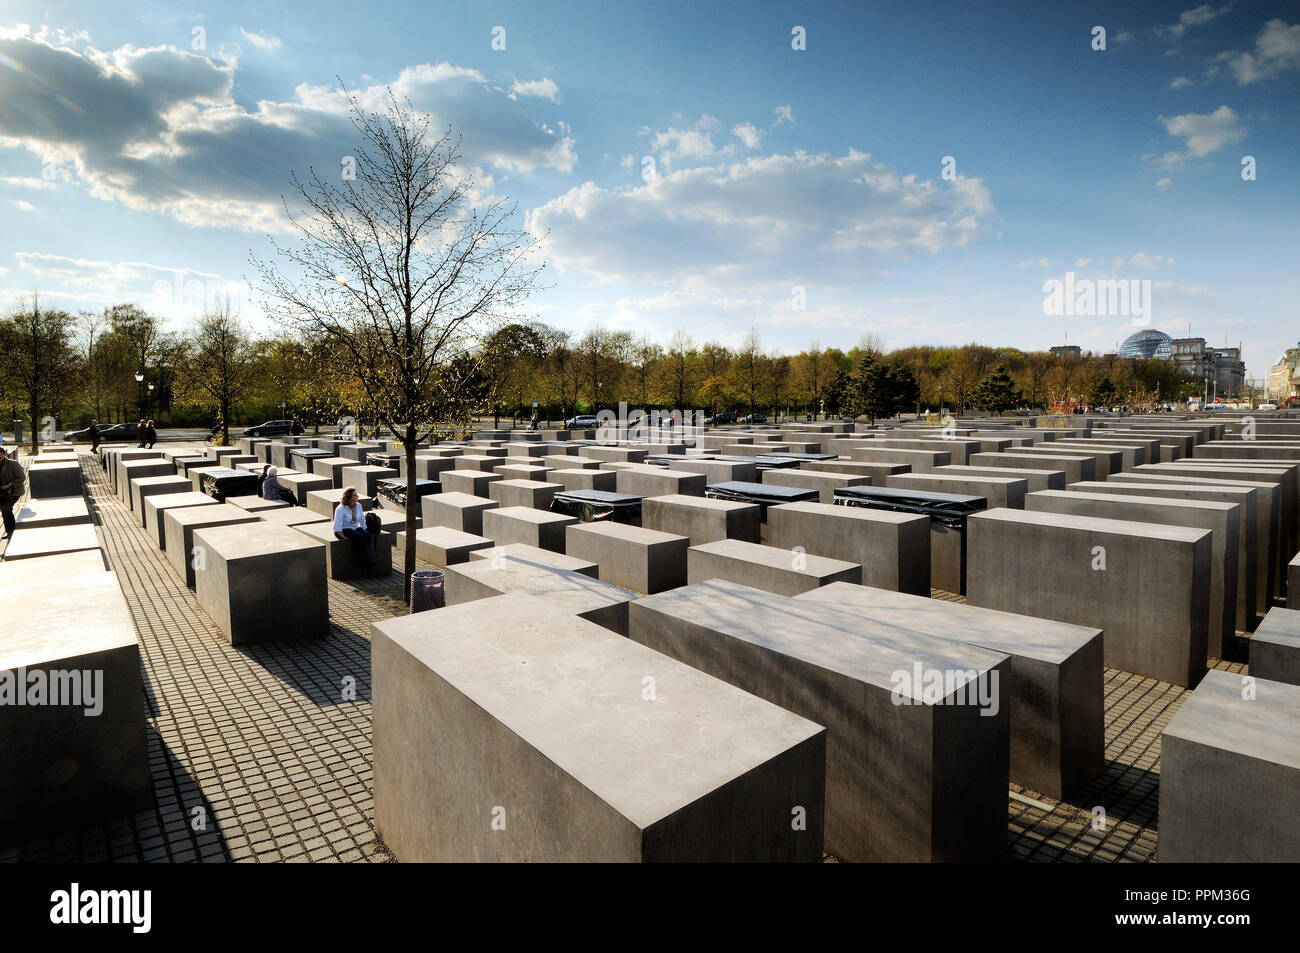 Holocaust Mémorial aux Juifs assassinés d'Europe. Berlin, Allemagne Banque D'Images